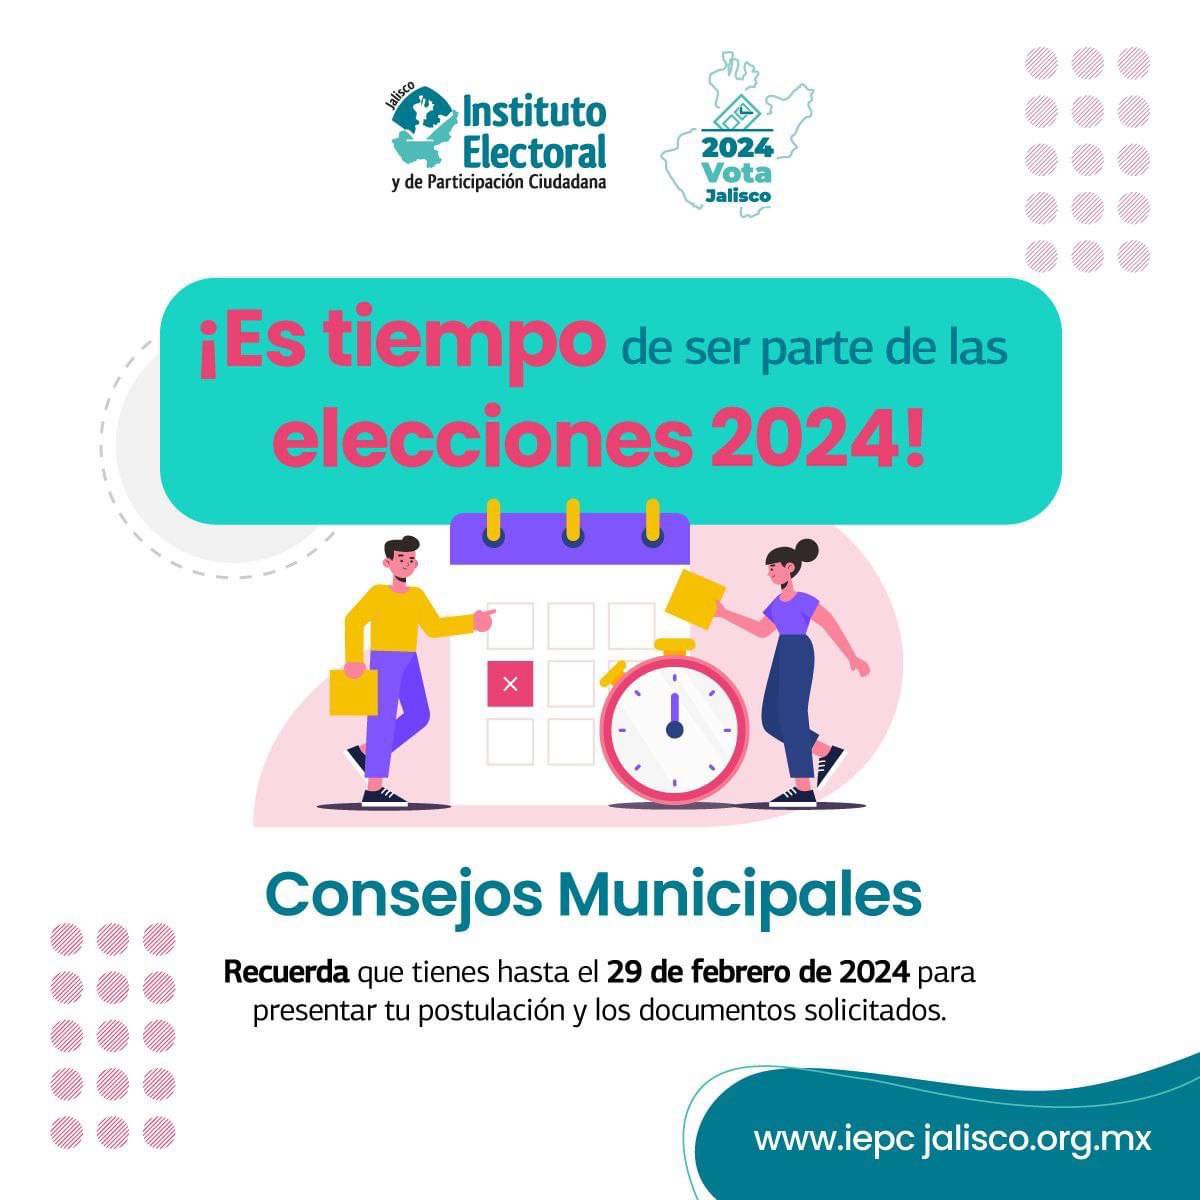 🙋🏻‍♀️🙋🏽‍♂️ #Postulate ||  Recuerda 😃 que tienes hasta el 29 de febrero de 2024 para enviarnos tu solicitud 📨 de registro  y ser parte de los #ConsejosMunicipales del Proceso Electoral 2023-2024 🗳.

Convocatoria ➡: iepc.cc/Sry3C10 
#TuVozEsElPoder #Elecciones2024 #Jalisco